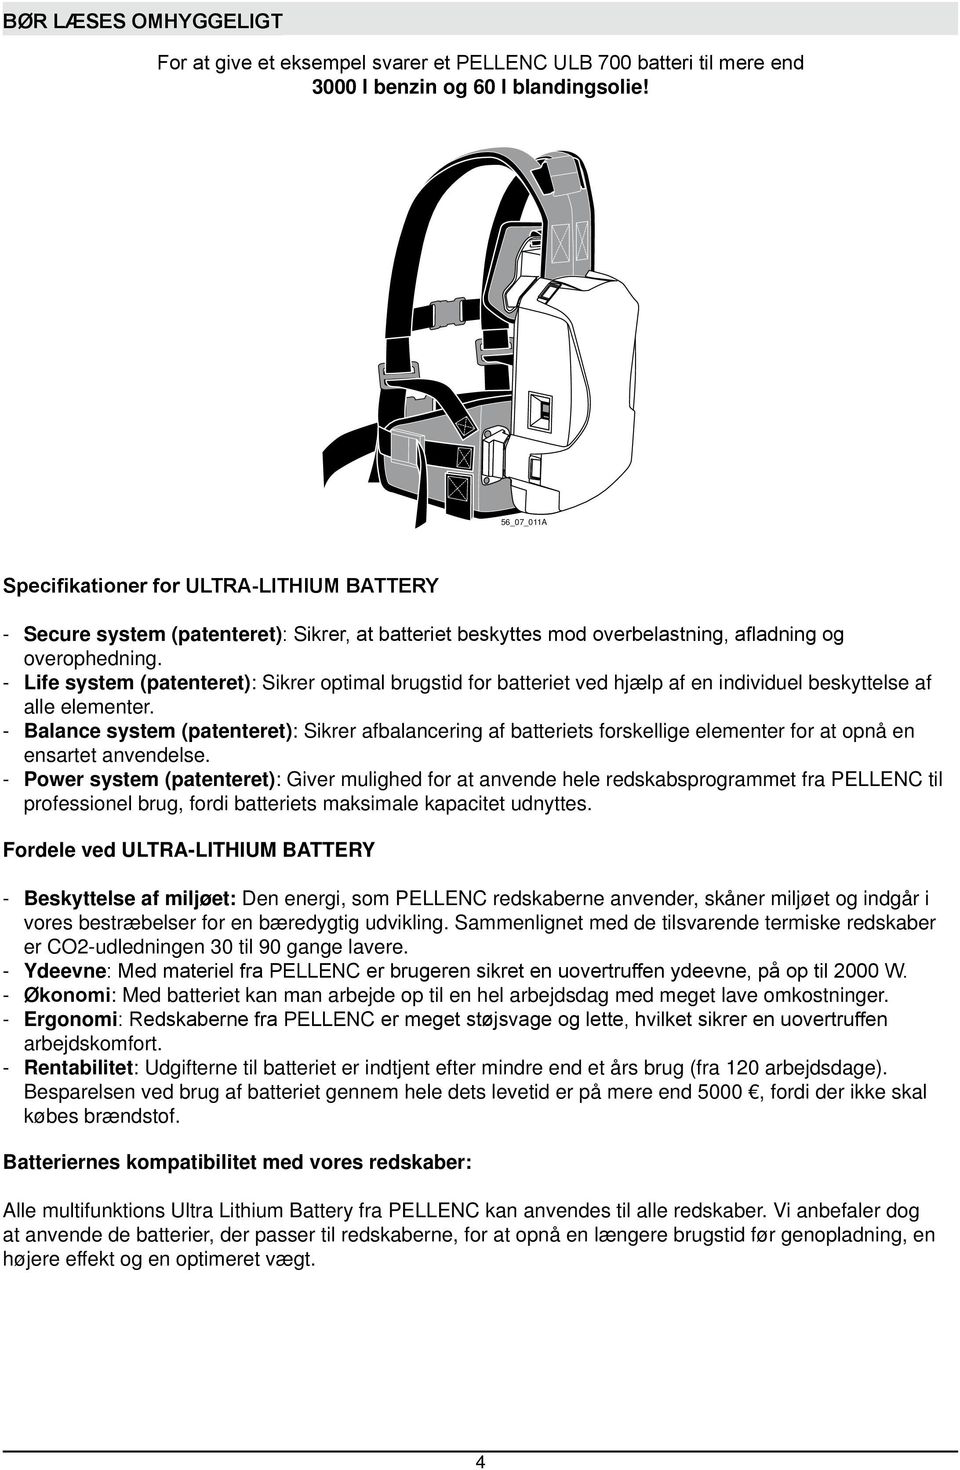 Life system (patenteret): Sikrer optimal brugstid for batteriet ved hjælp af en individuel beskyttelse af alle elementer.